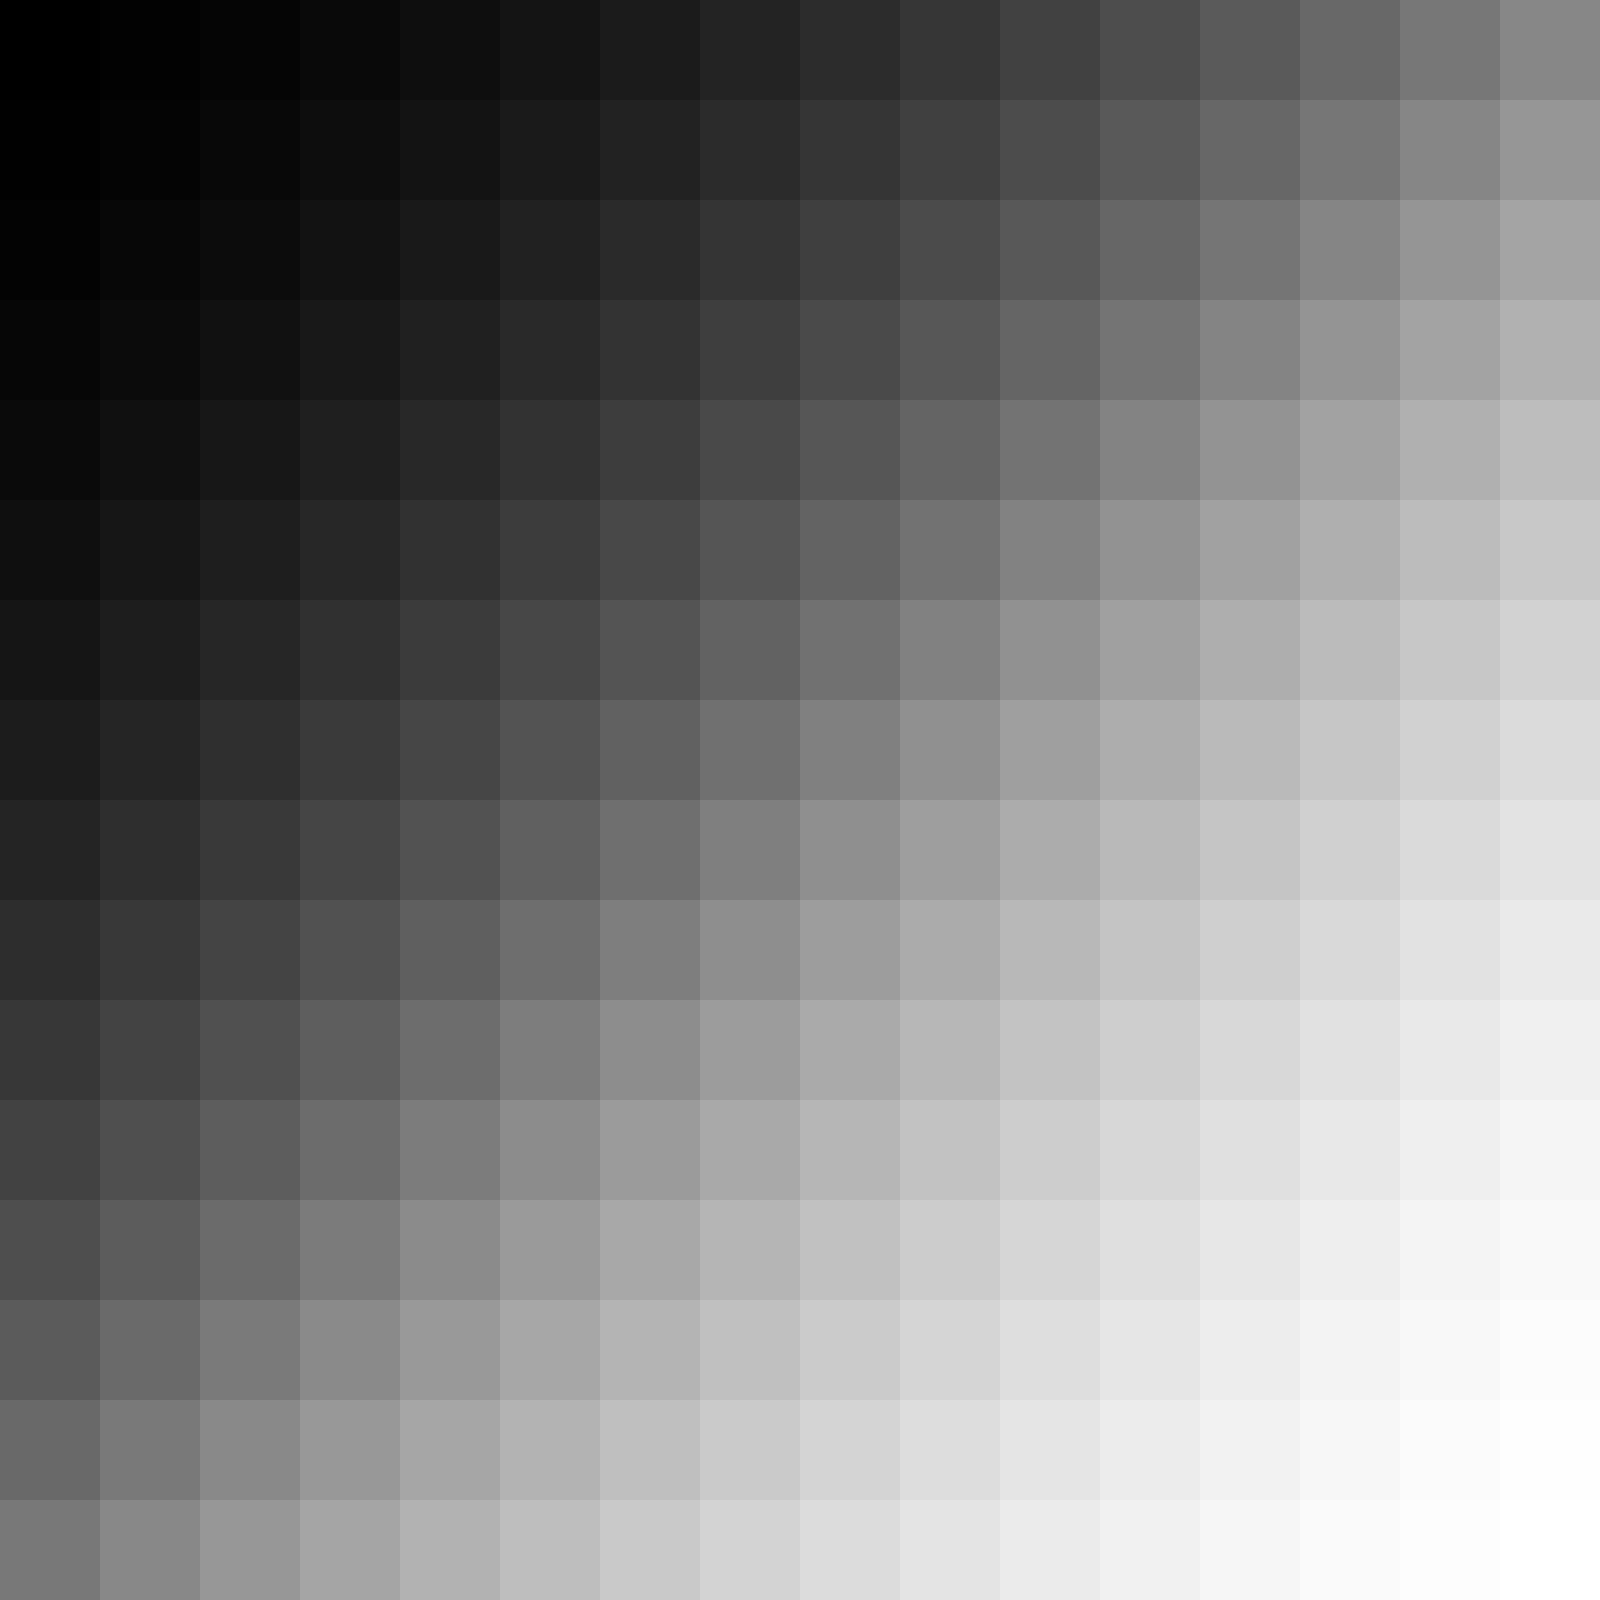 256 shades of grey